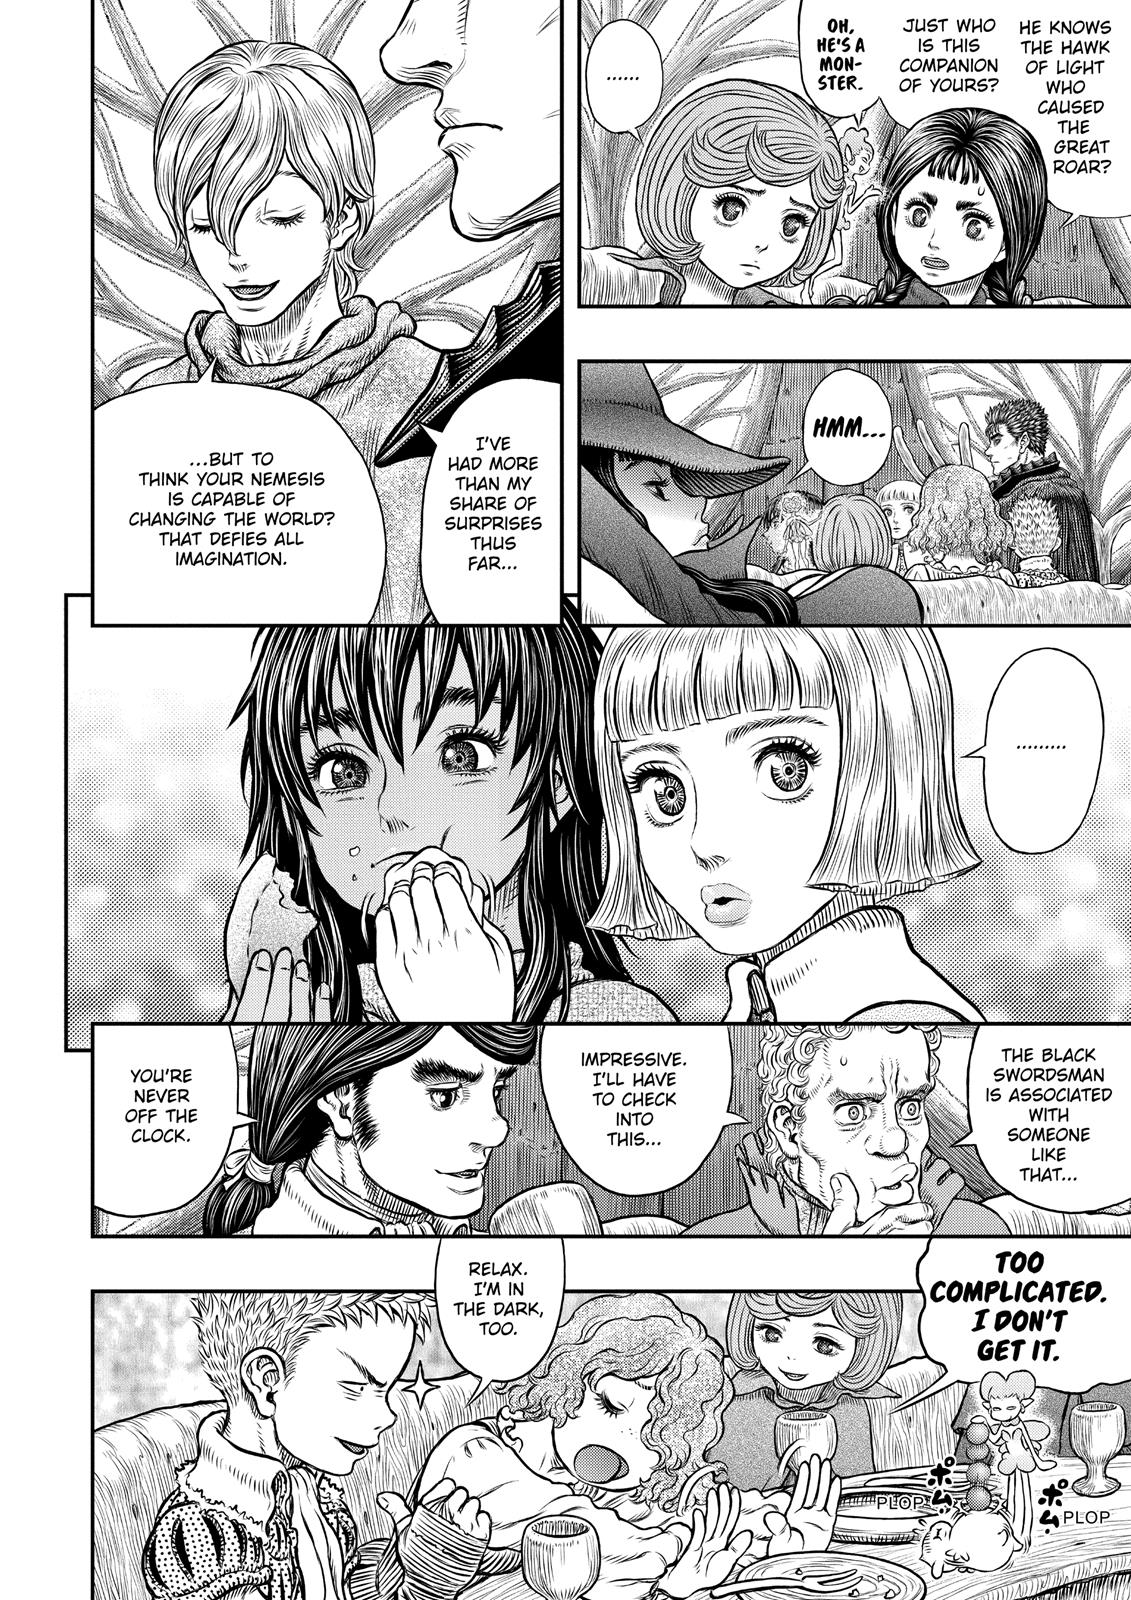 Berserk Manga Chapter 345 image 17